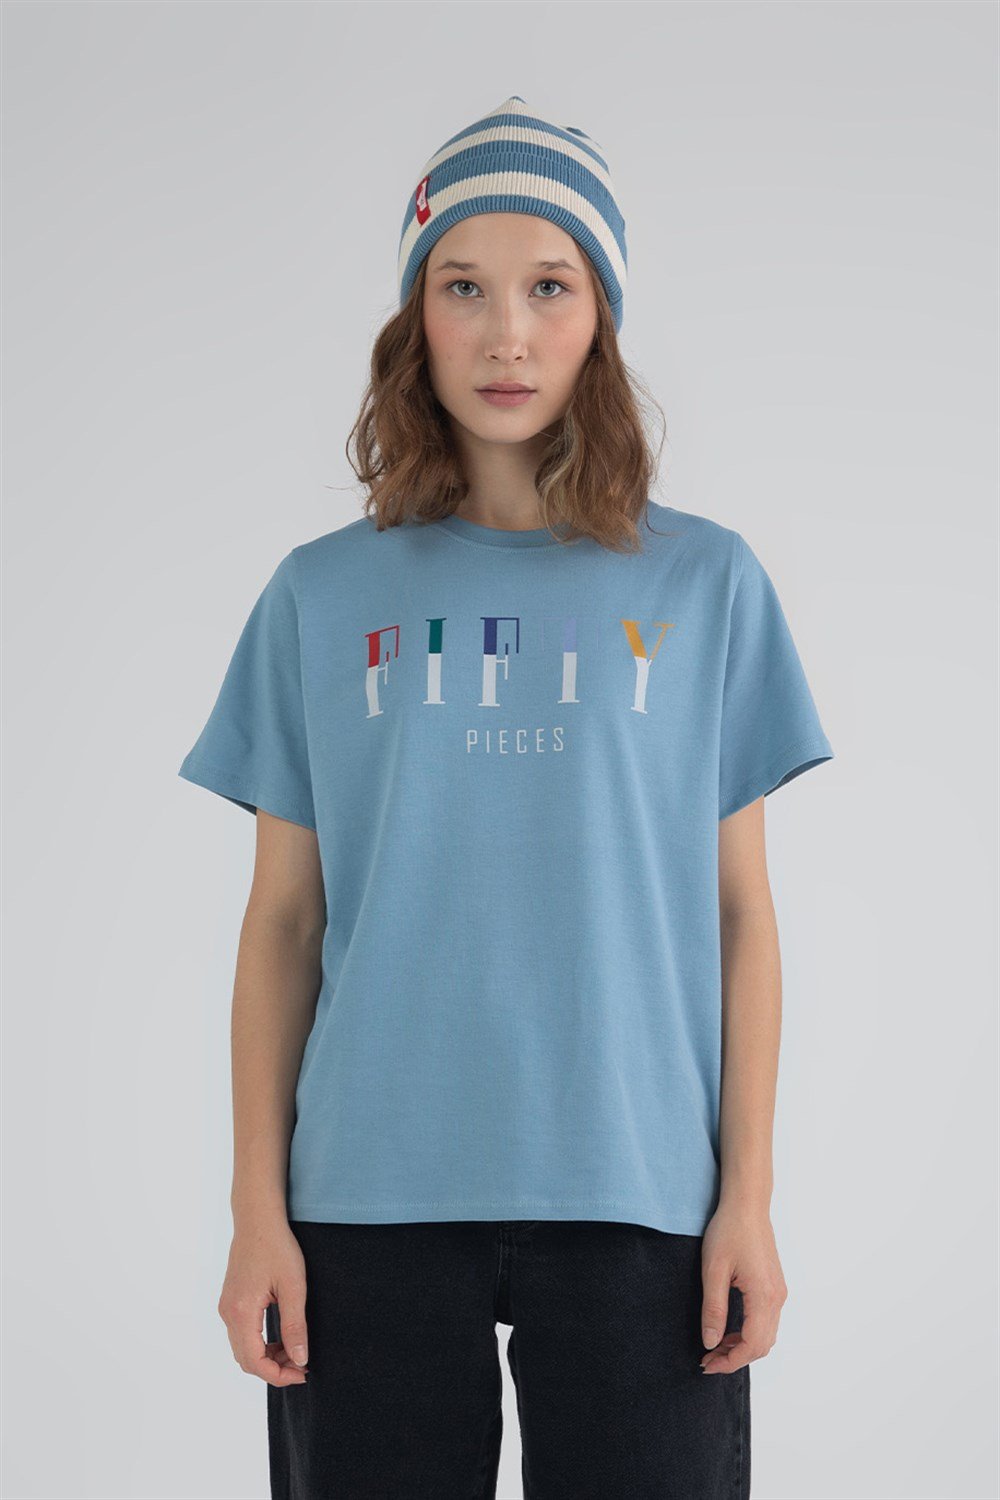 Kadın Mavi Loose Fit T-Shirt - Fifty Pieces